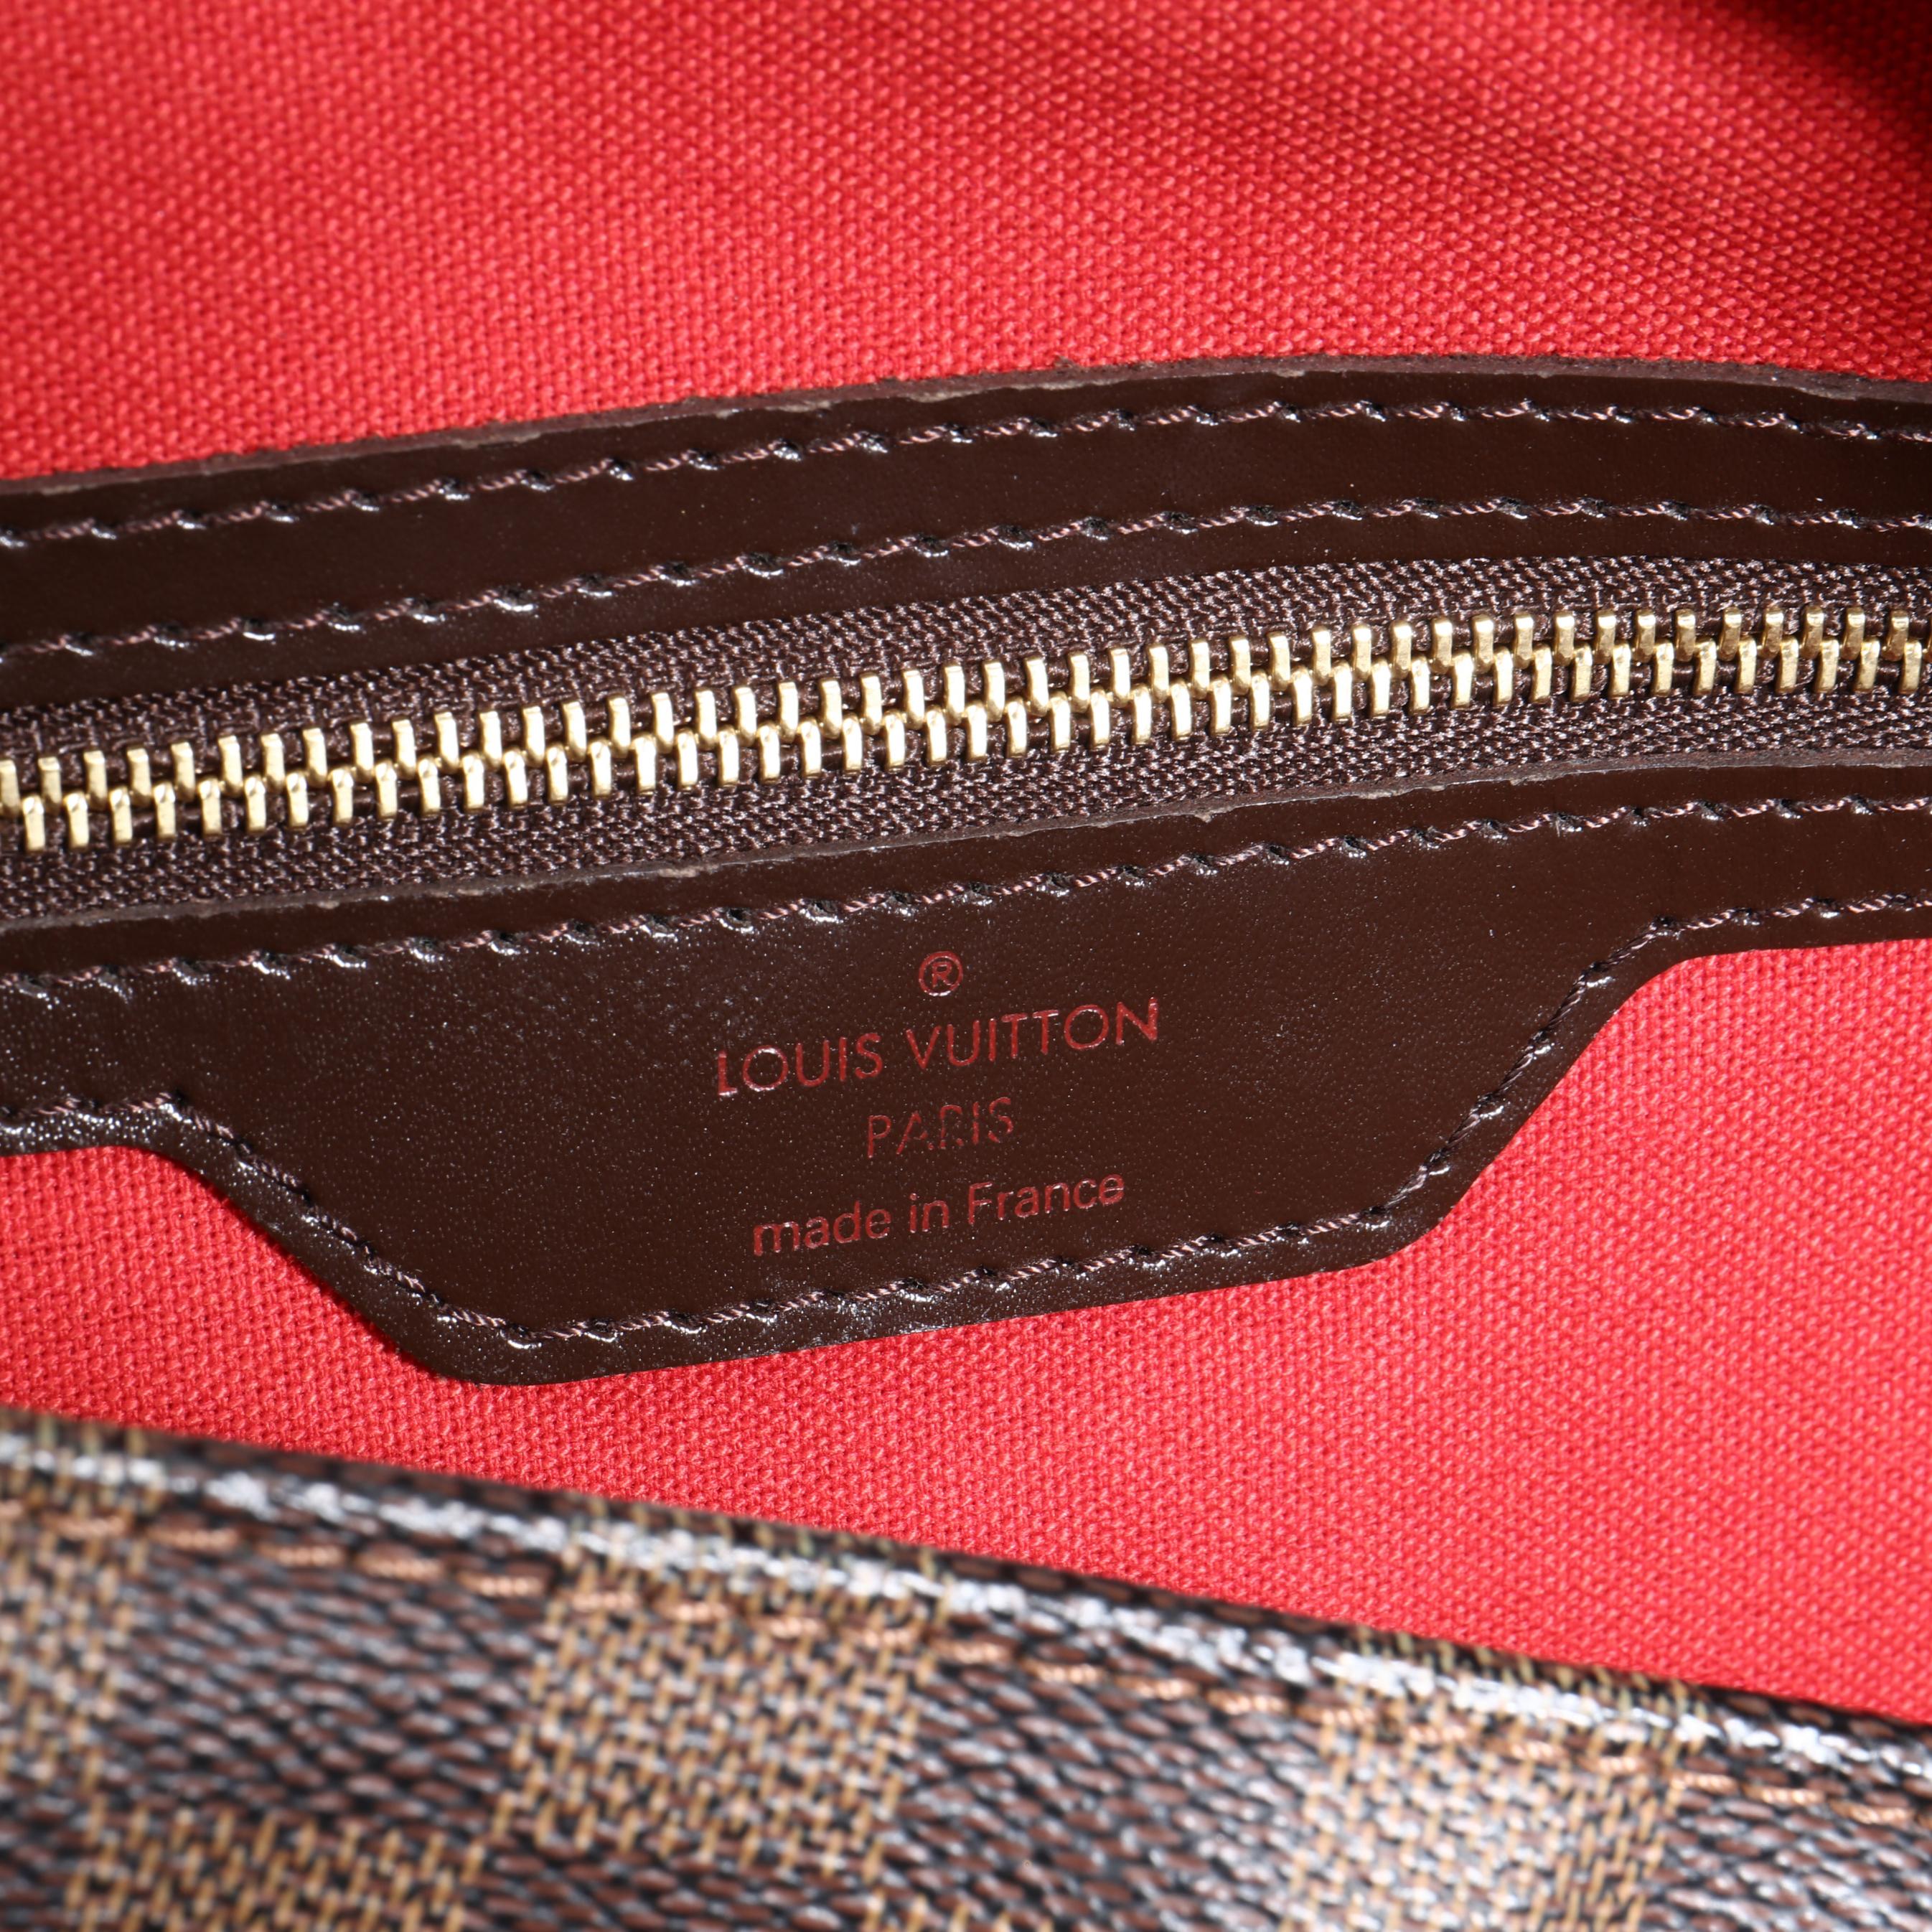 Damier Ebene Chelsea Shoulder Bag, Louis Vuitton (Lot 138 - The Important  Winter AuctionDec 5, 2020, 9:00am)